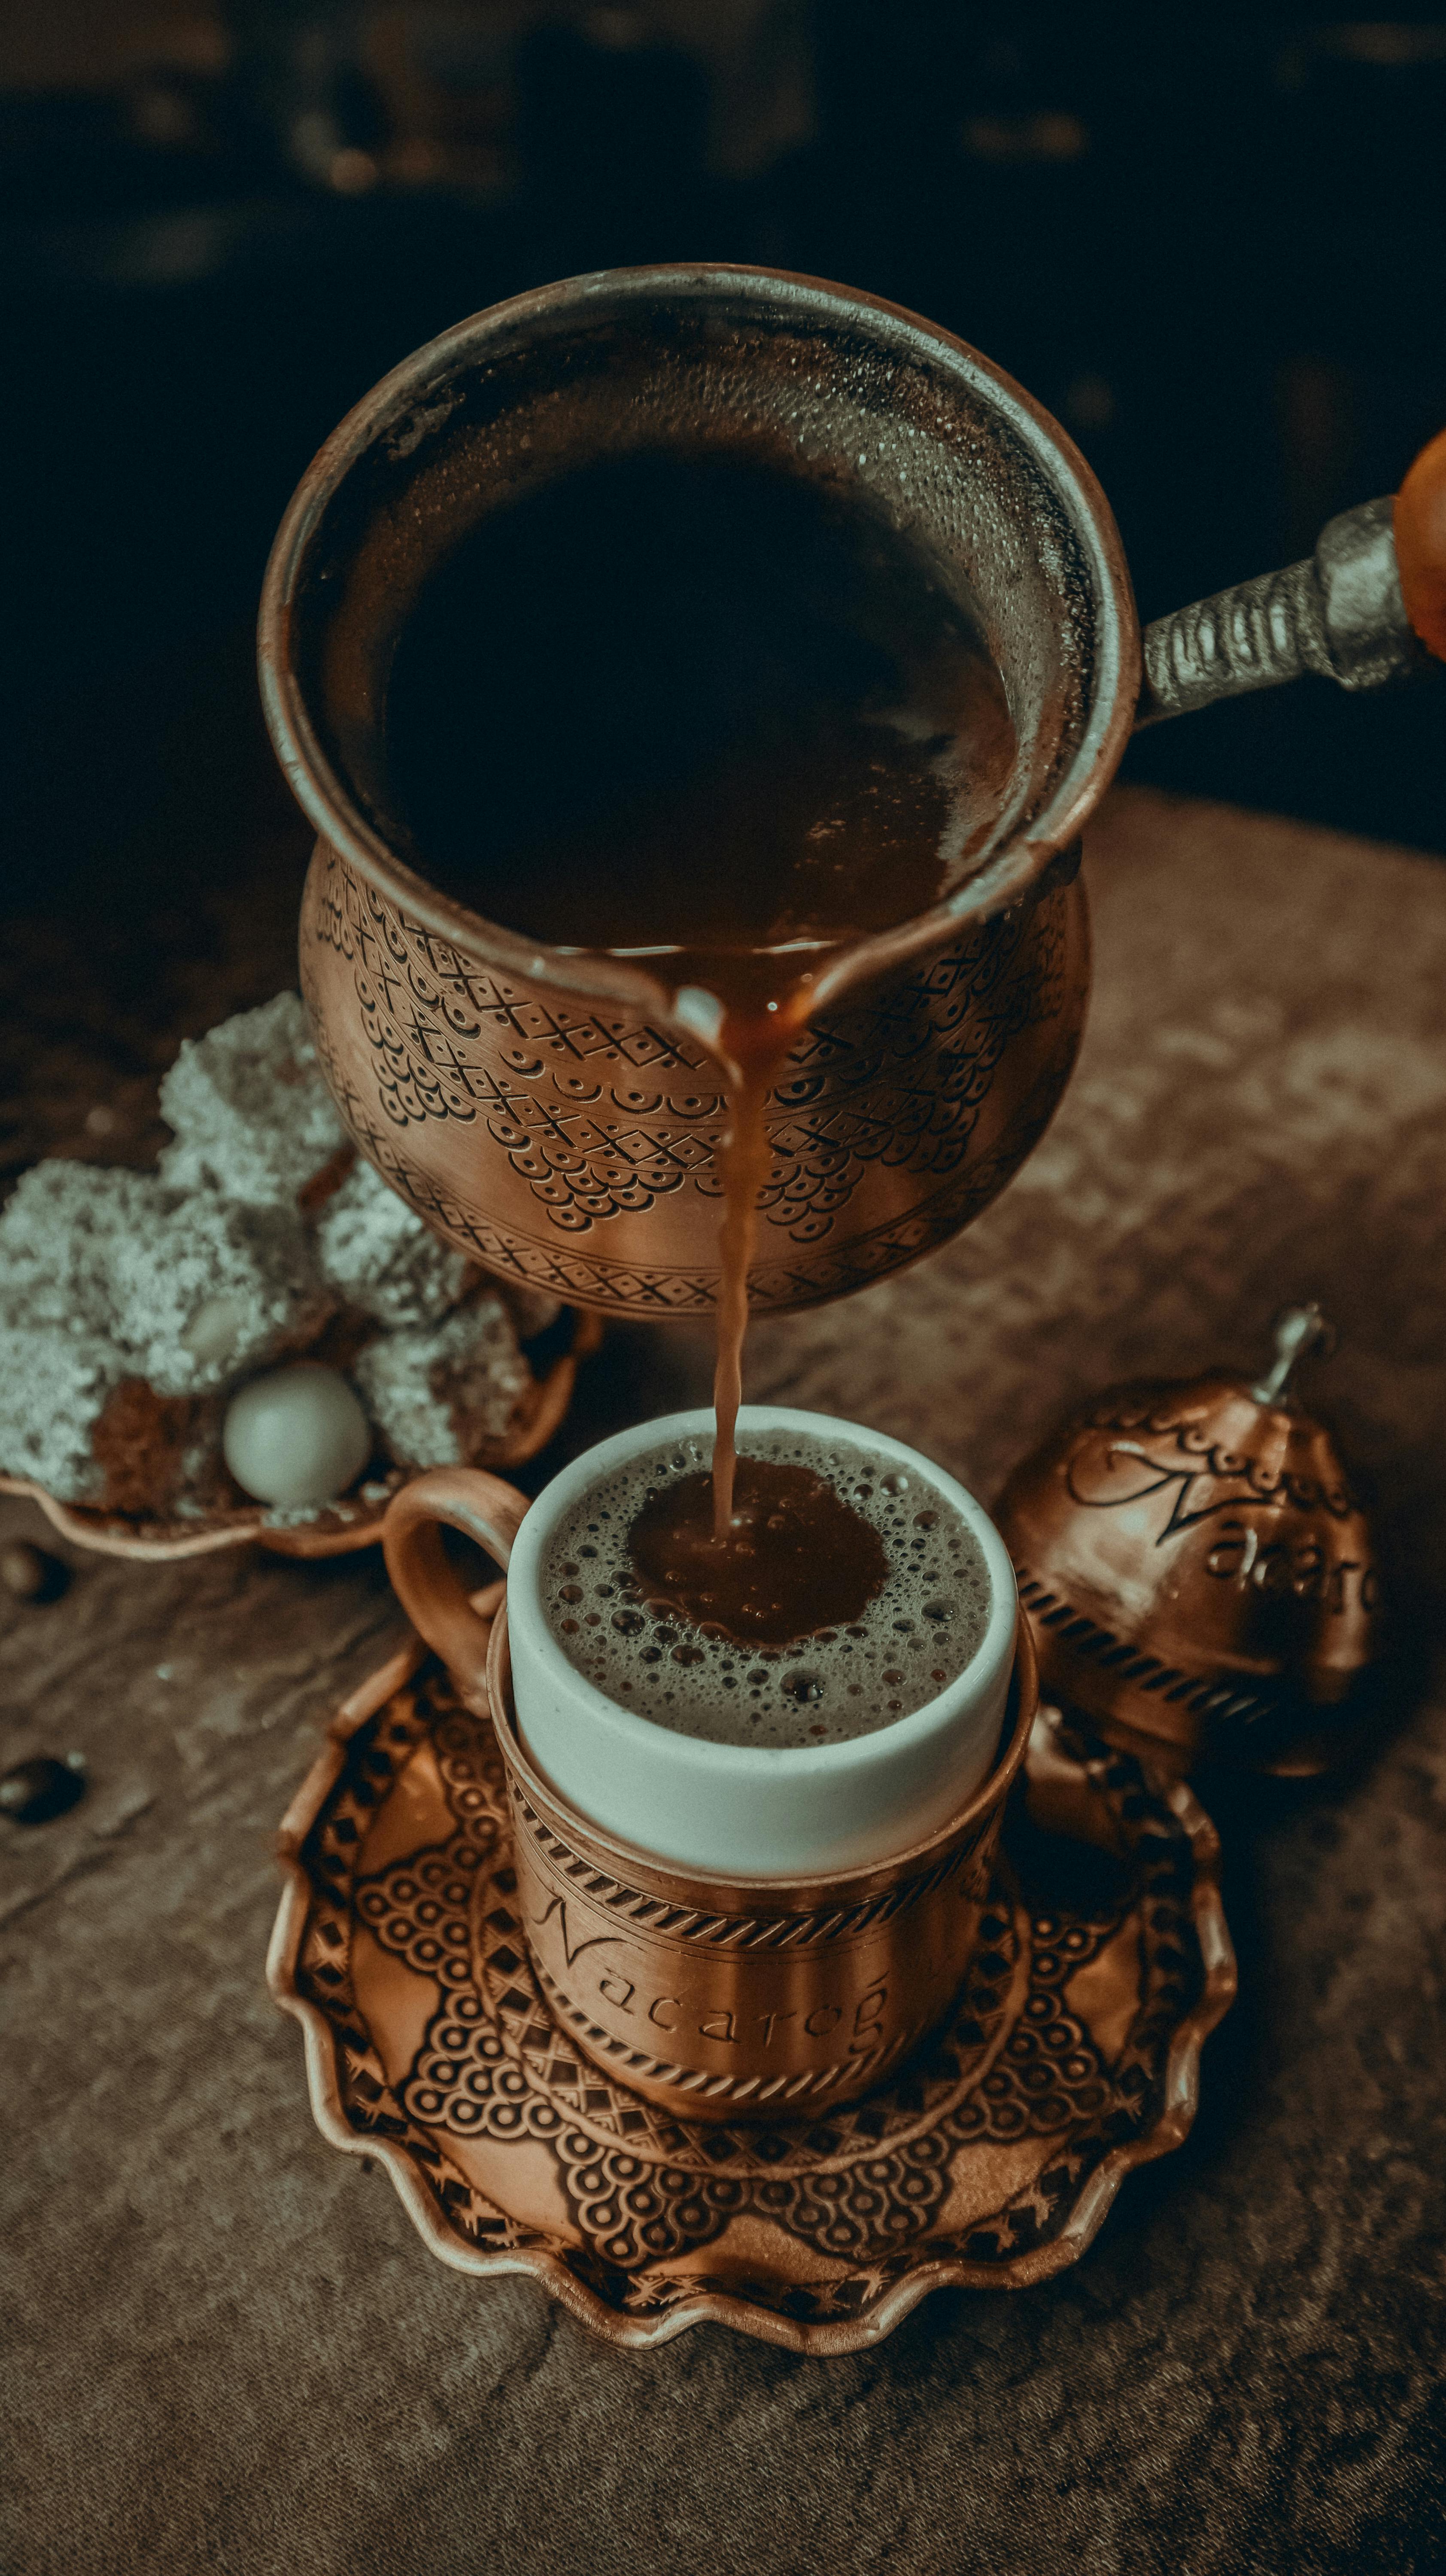 Do you put sugar in Turkish coffee?